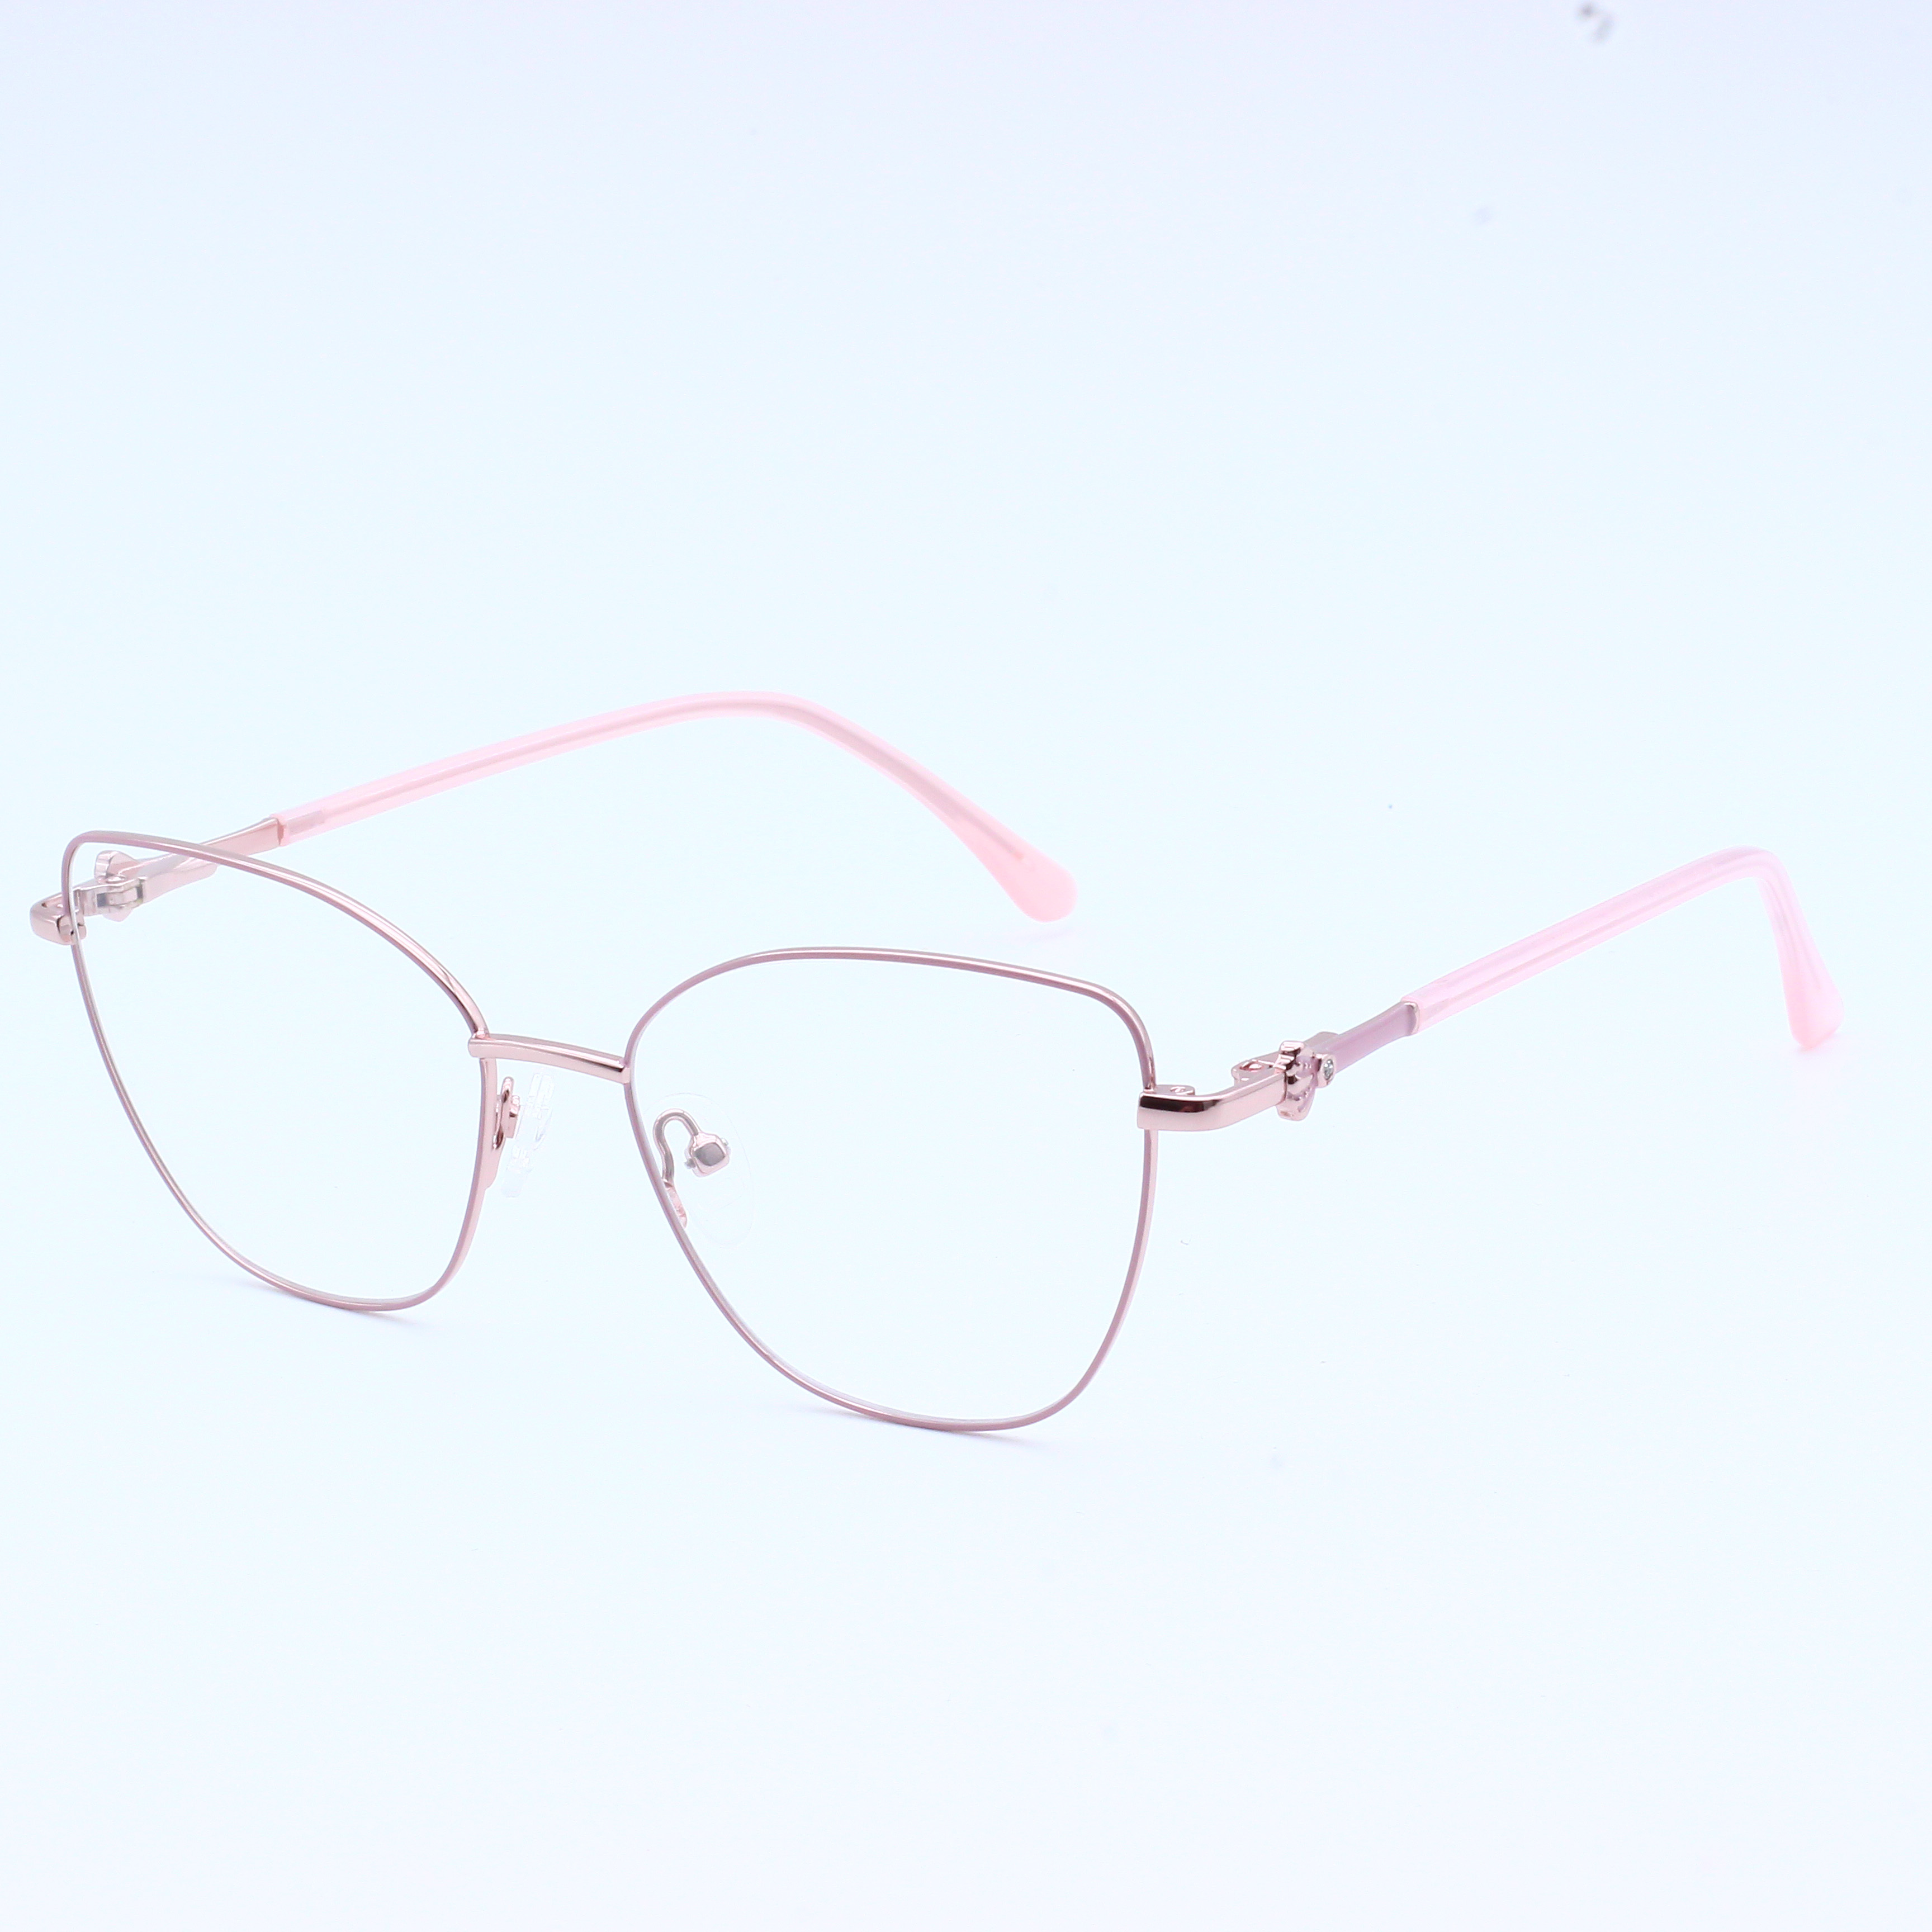 New Fashion Trend Metal Eyeglasses Frame (9)